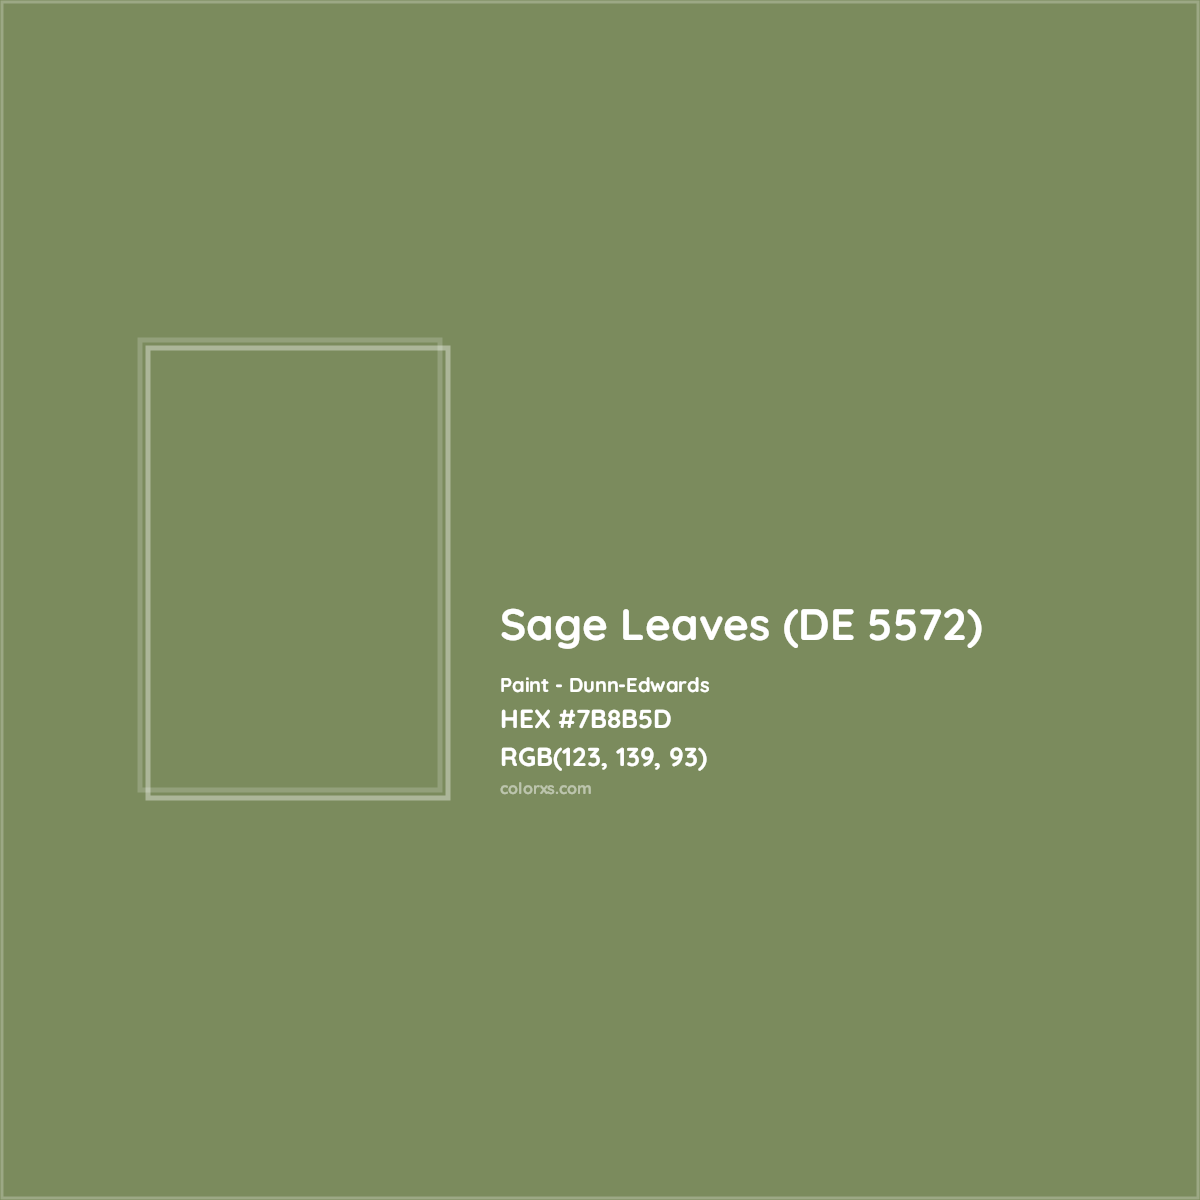 HEX #7B8B5D Sage Leaves (DE 5572) Paint Dunn-Edwards - Color Code